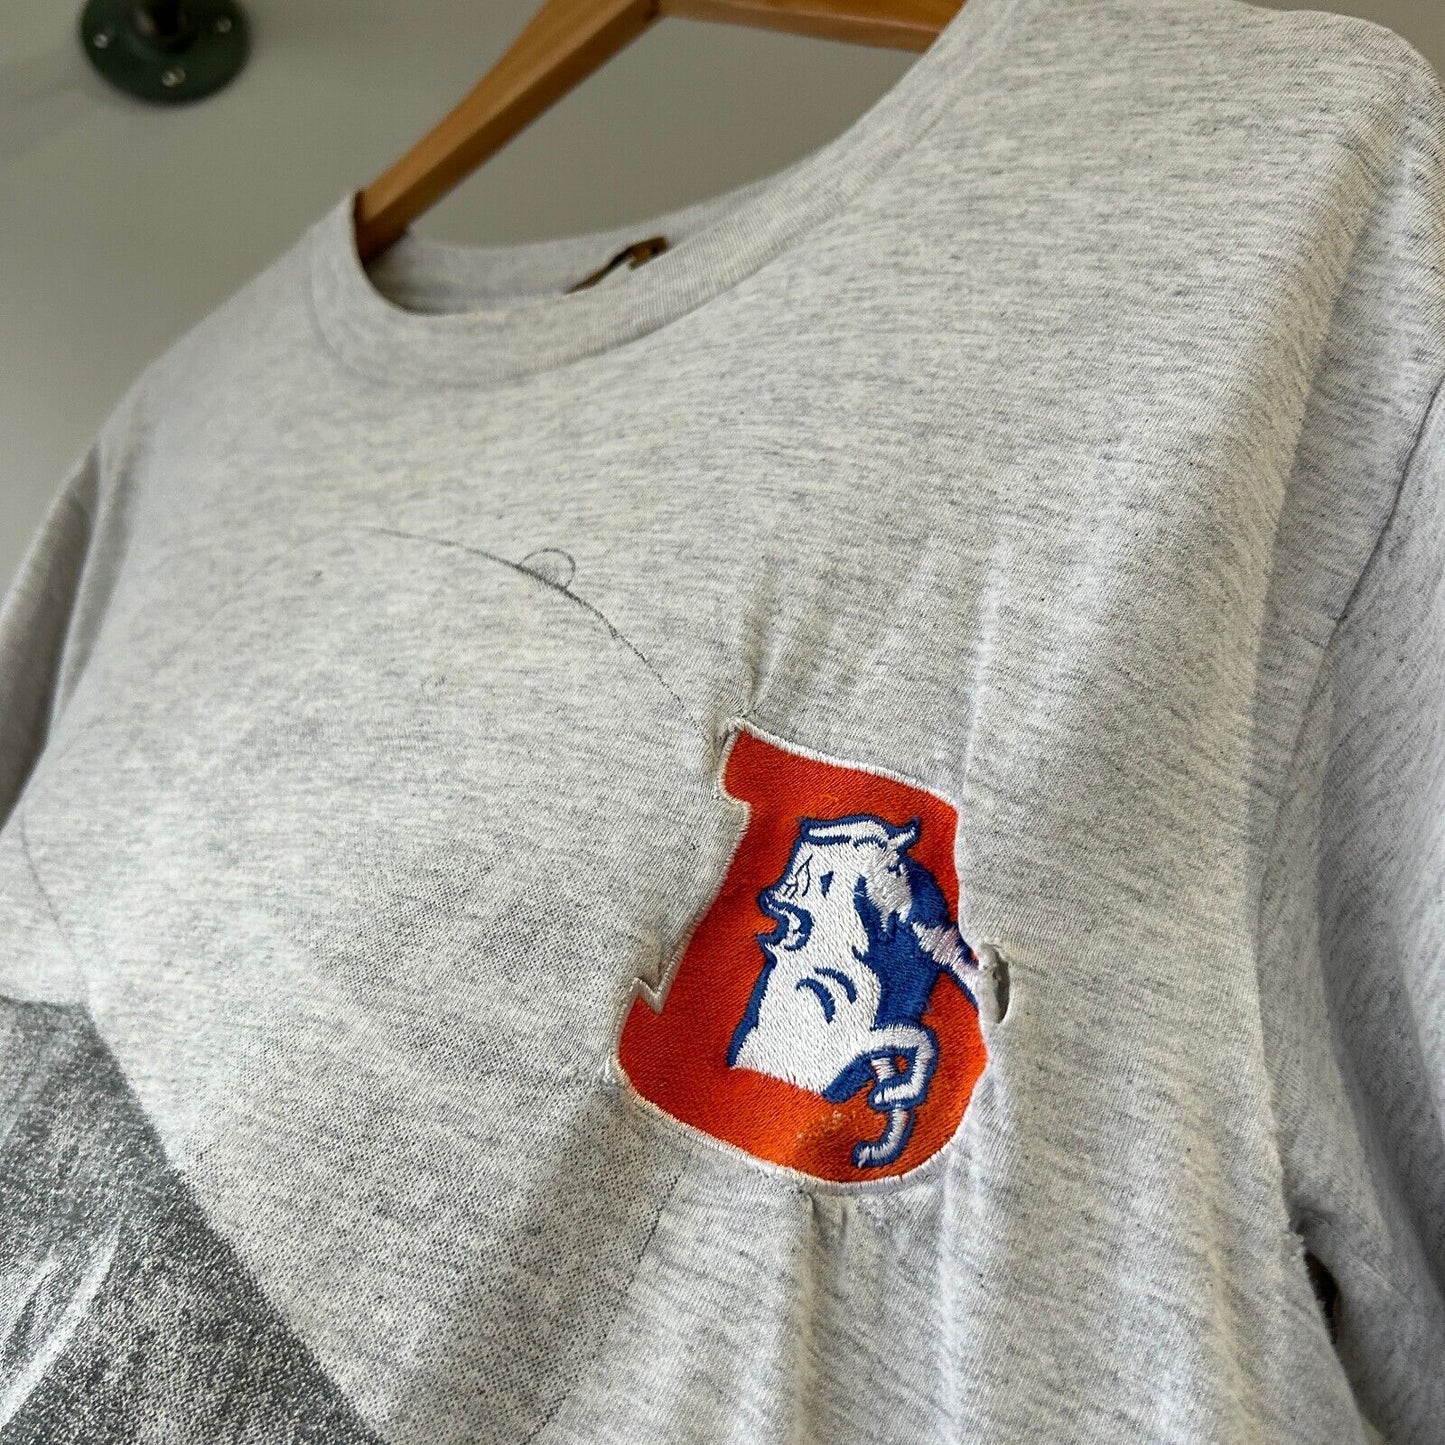 VINTAGE 90s | NFL Denver Broncos John Elway Embroidered Logo T-Shirt sz M Adult